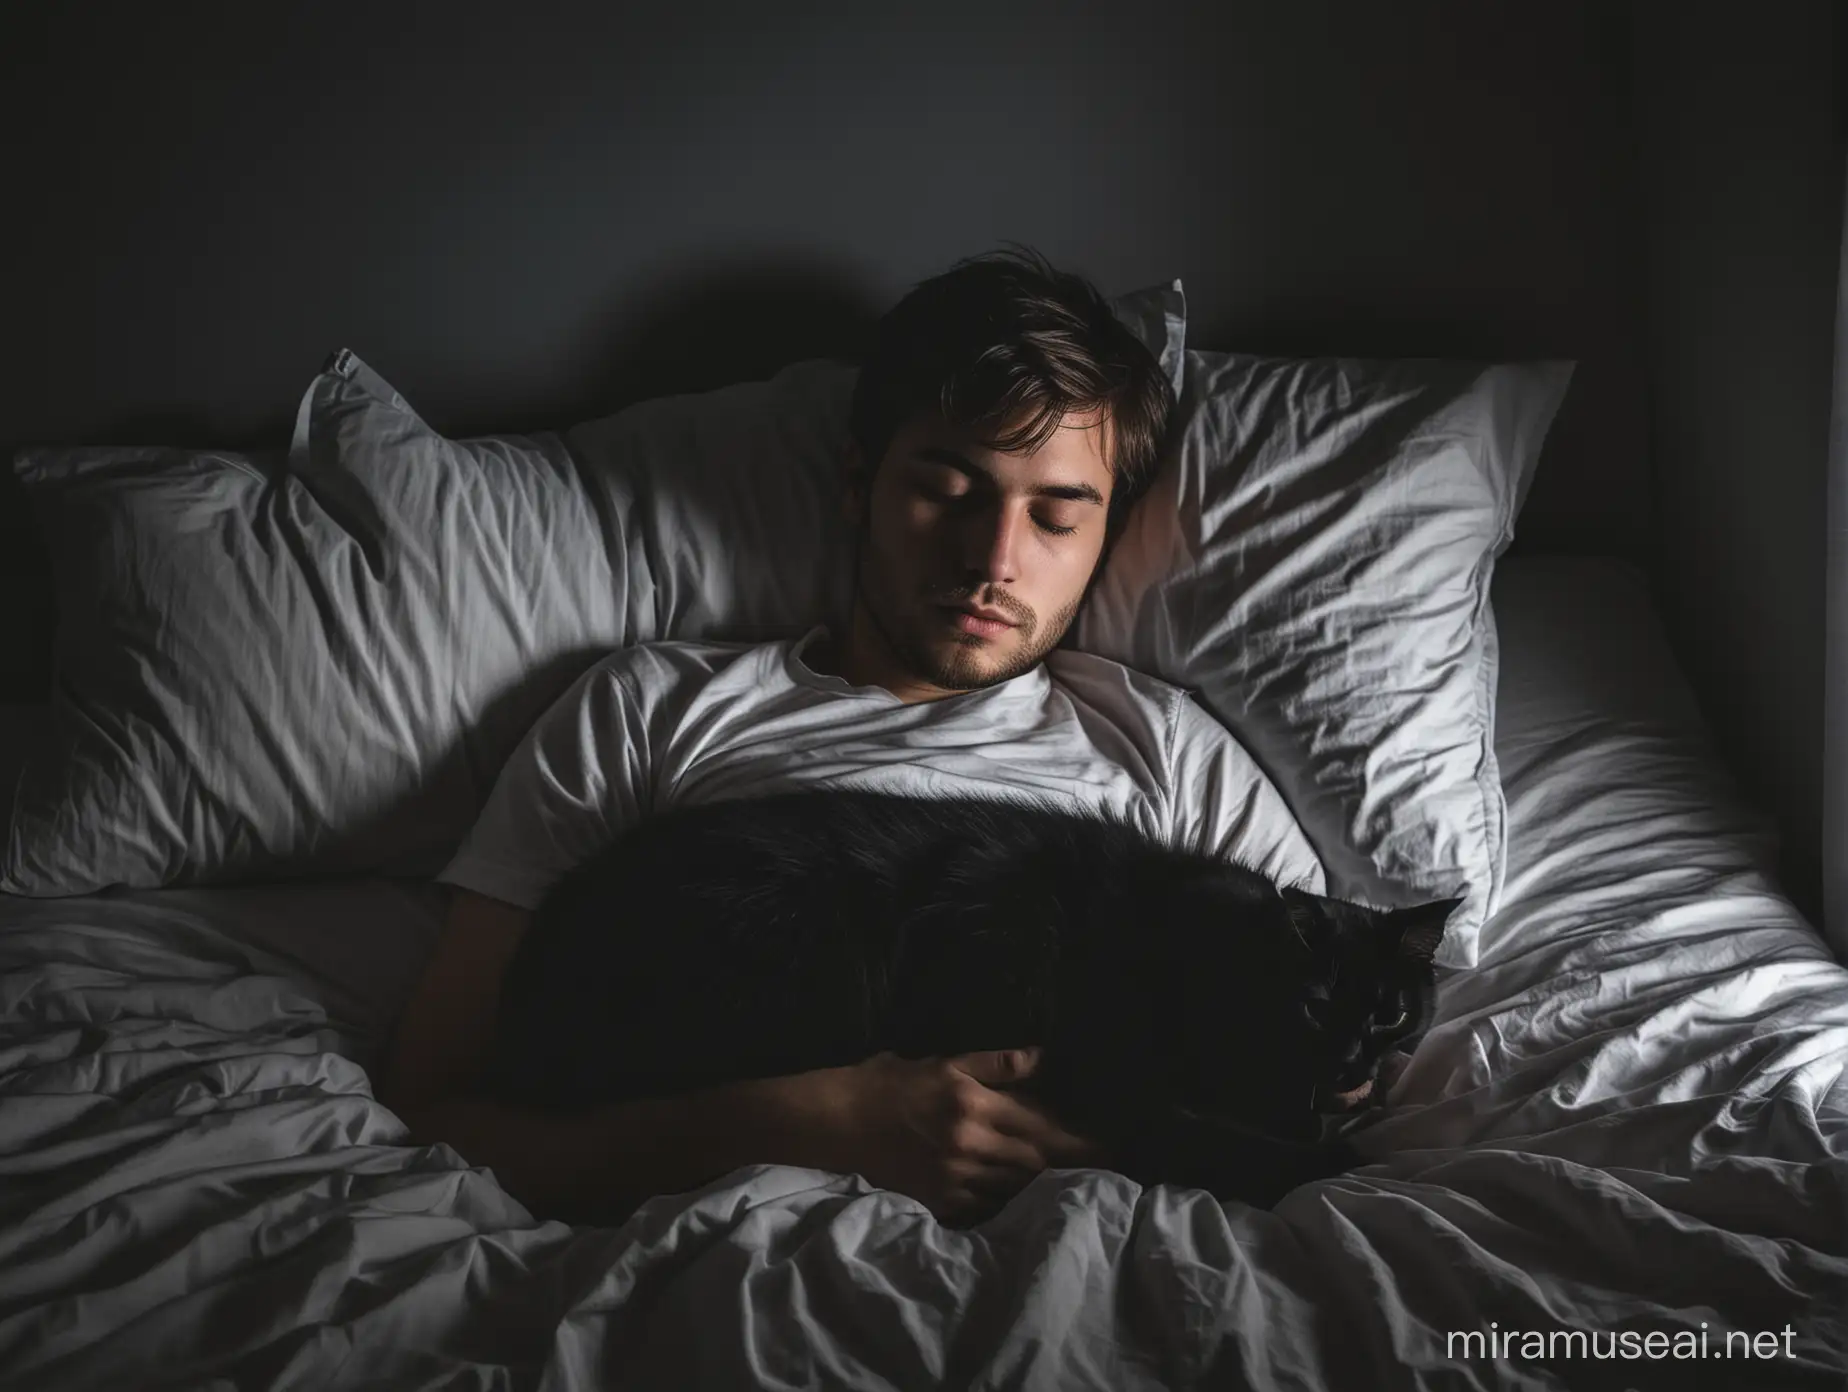 un hombre joven adulto durmiendo junto con su gato color negro en la cama de una habitación oscura en la noche.